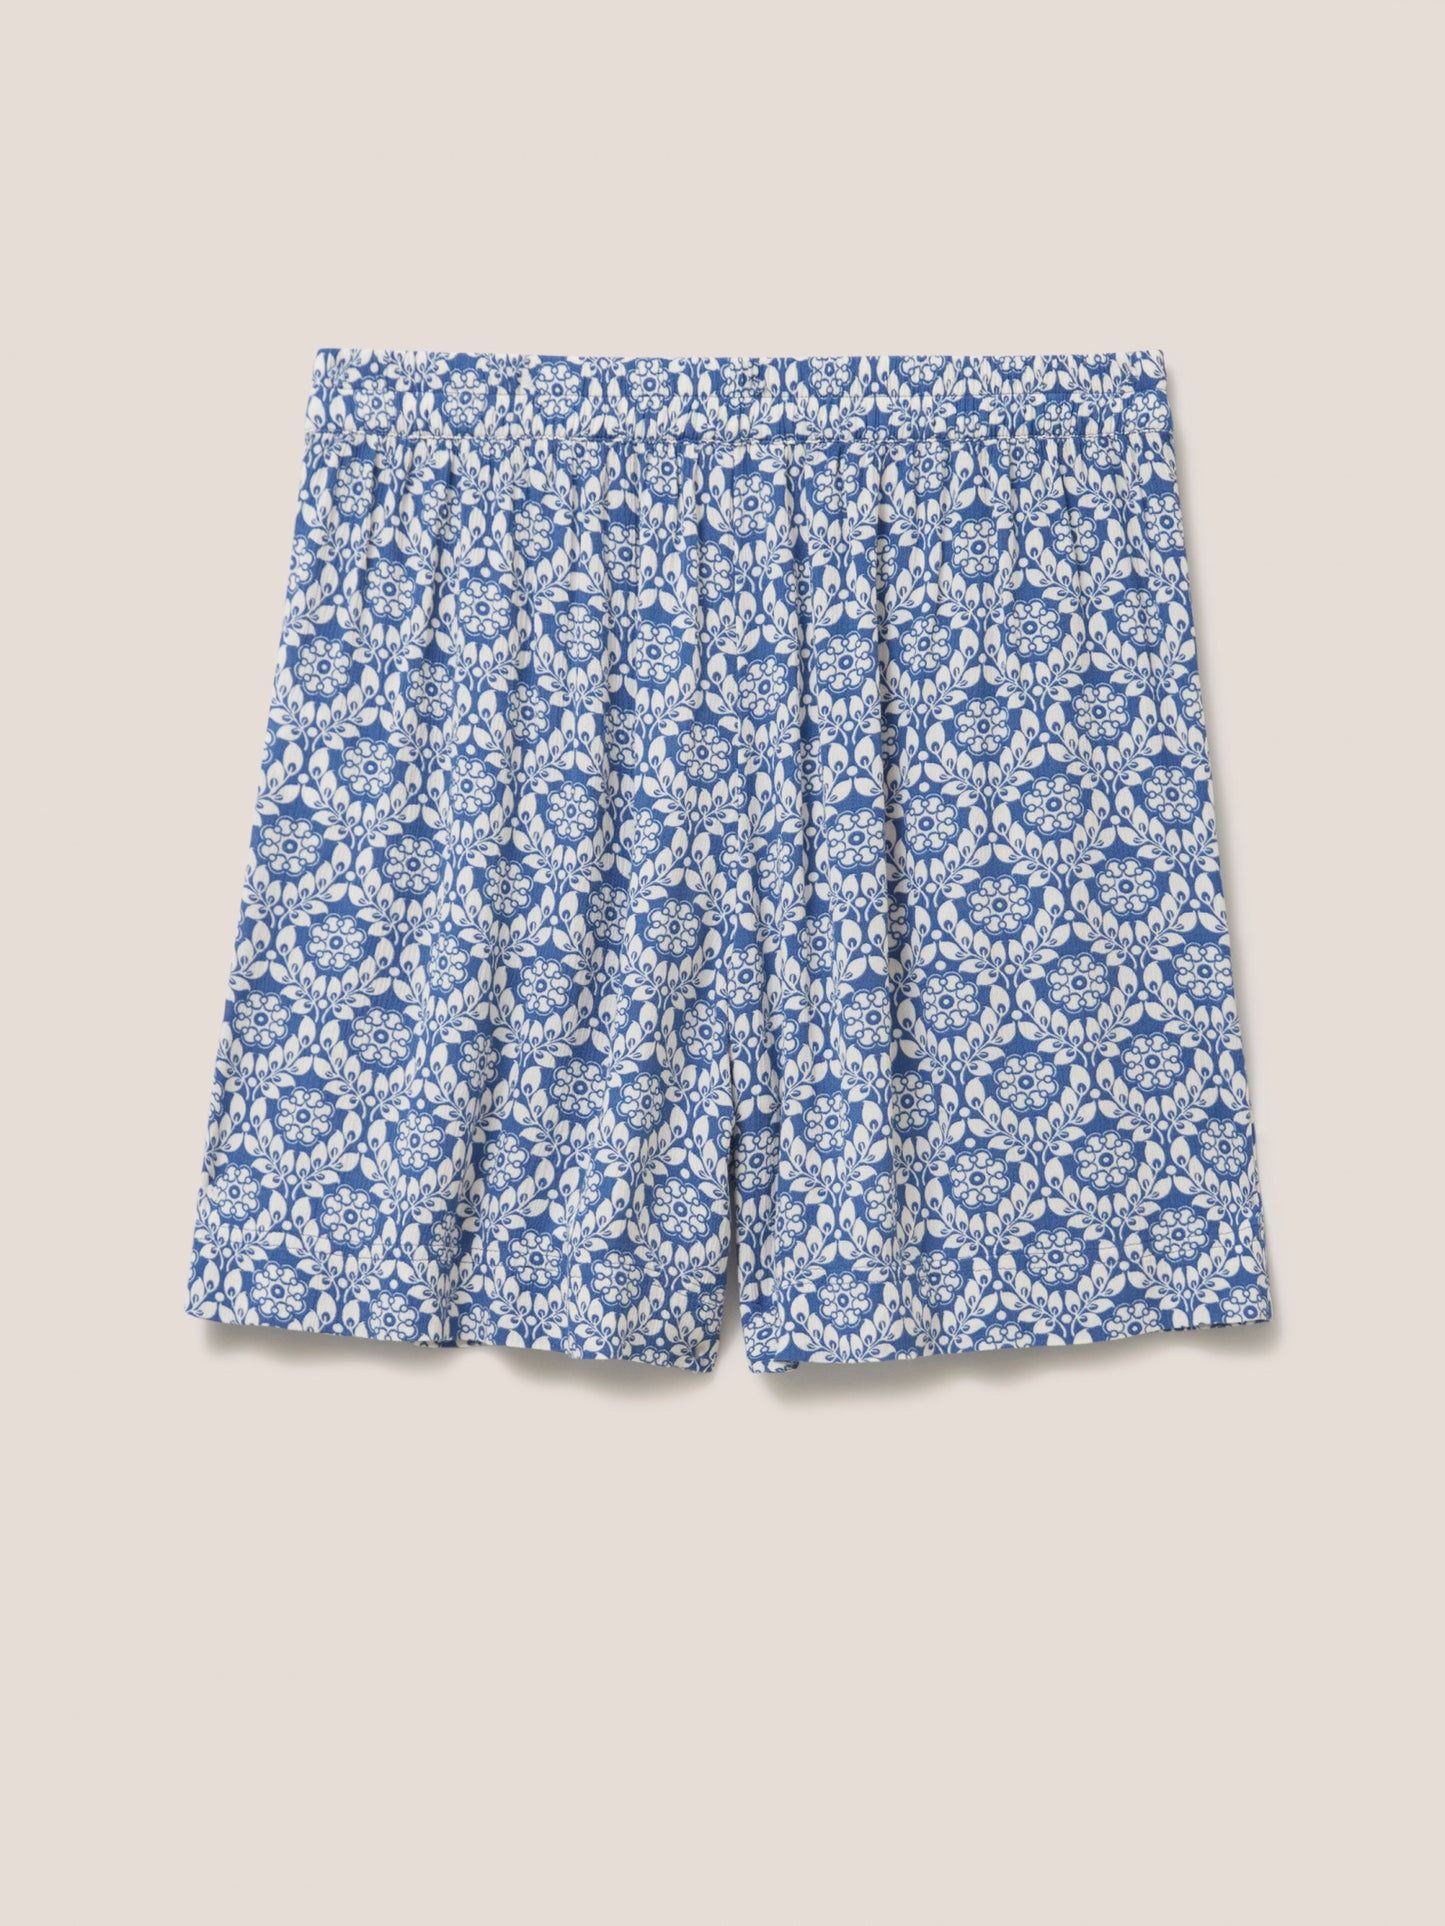 White Stuff - Mathilda Crinkle shorts - Blauw